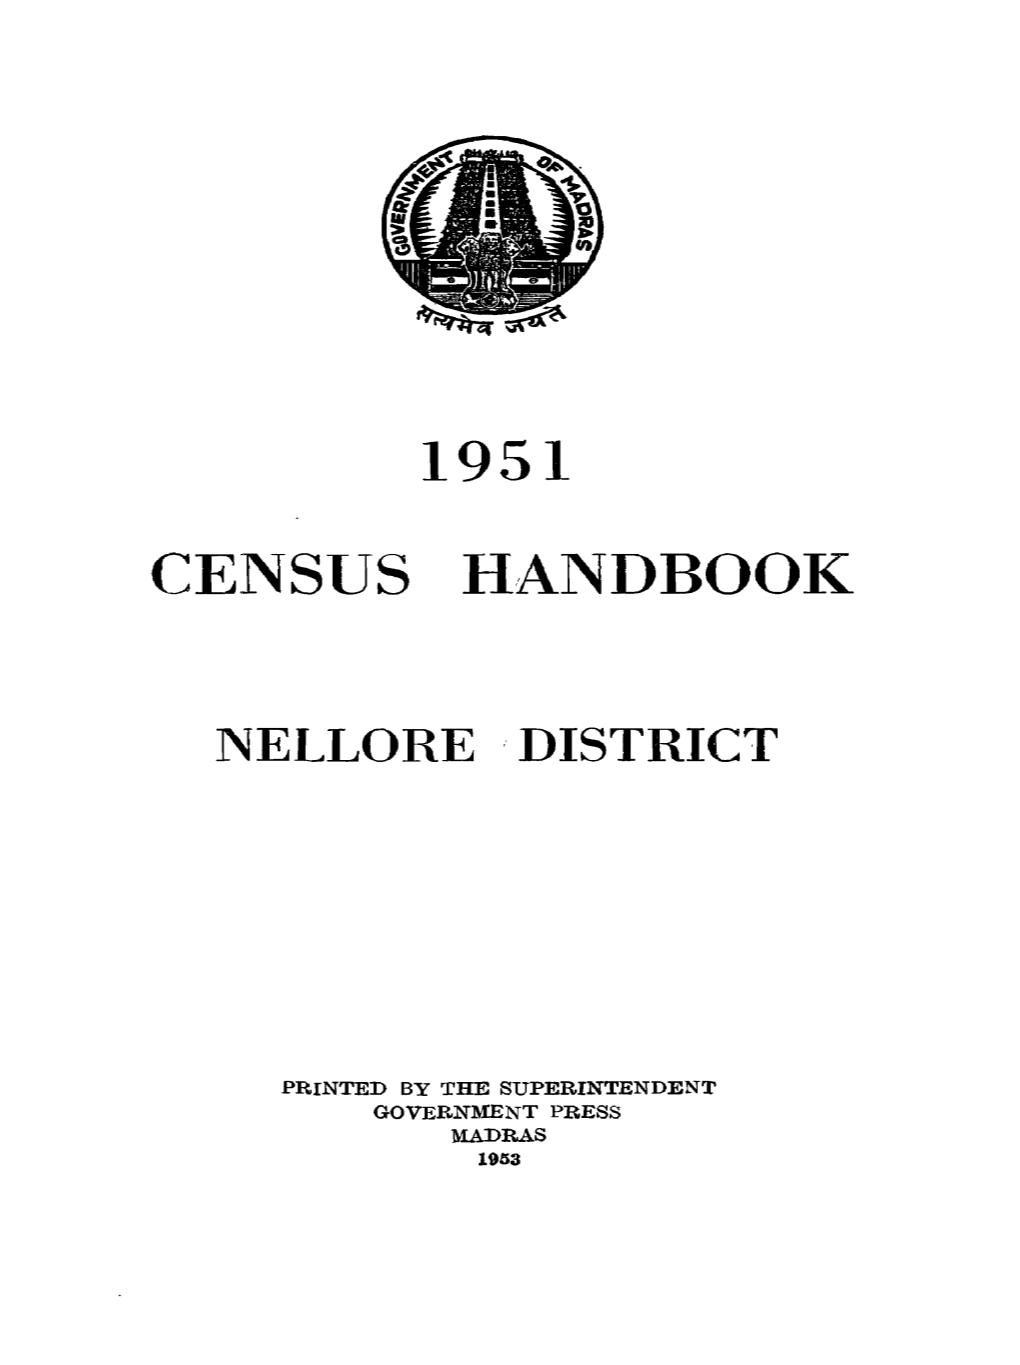 Census Handbook, Nellore